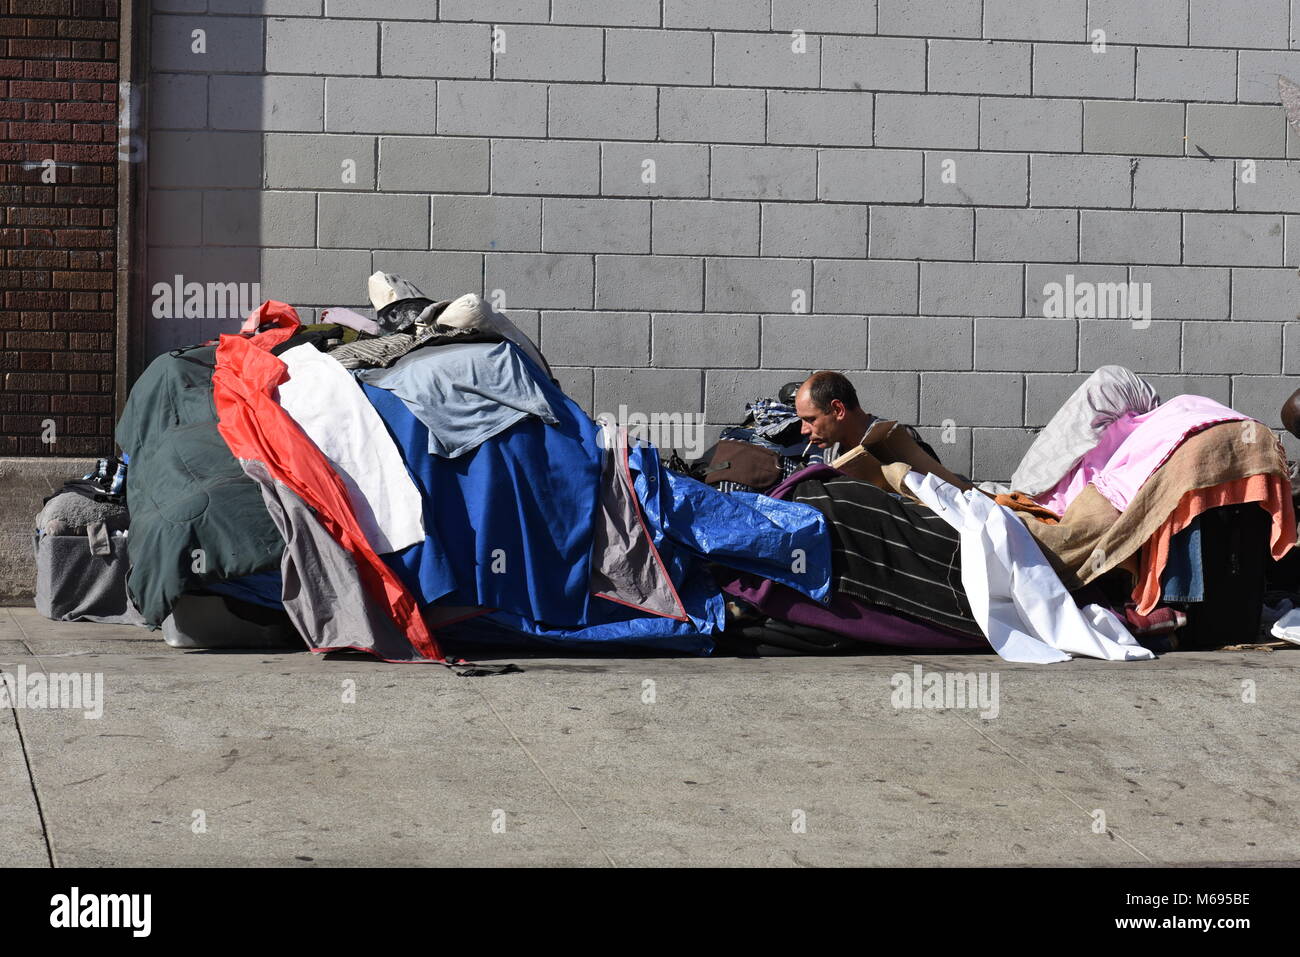 Szenen aus Skid Row ein Bereich der Innenstadt von Los Angeles, ist einer der größten stabile Populationen (zwischen 5.000 und 8.000) von Obdachlosen. Stockfoto